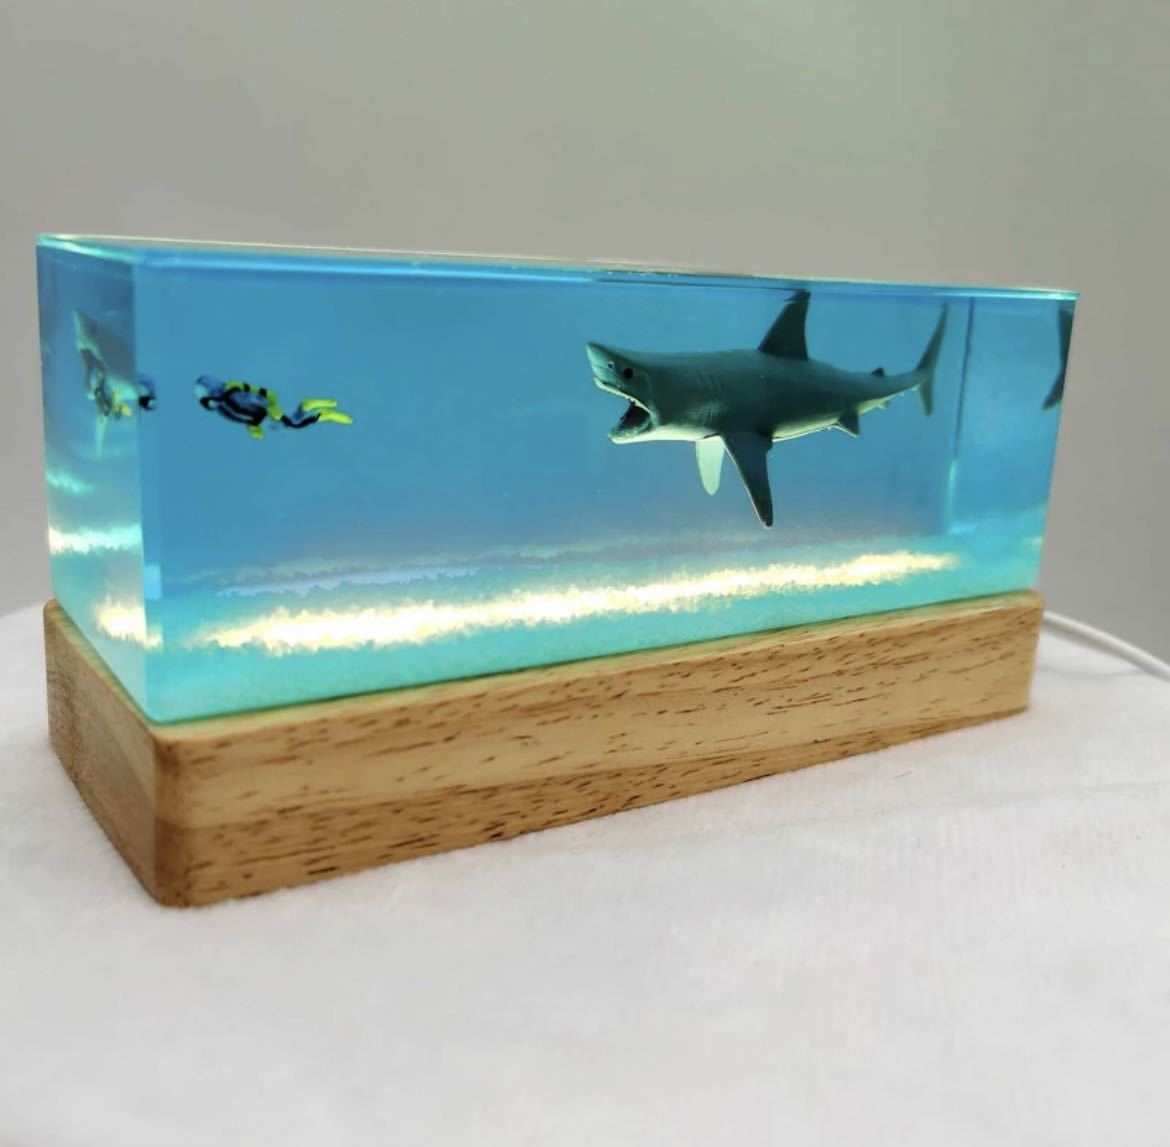 हस्तनिर्मित शार्क गोताखोर डेस्क चित्र चित्र आंतरिक सजावट वस्तु मूर्ति कला सहायक राल समुद्री प्रकाश क्रिएटिव शार्क 626, हस्तनिर्मित कार्य, आंतरिक भाग, विविध वस्तुएं, आभूषण, वस्तु